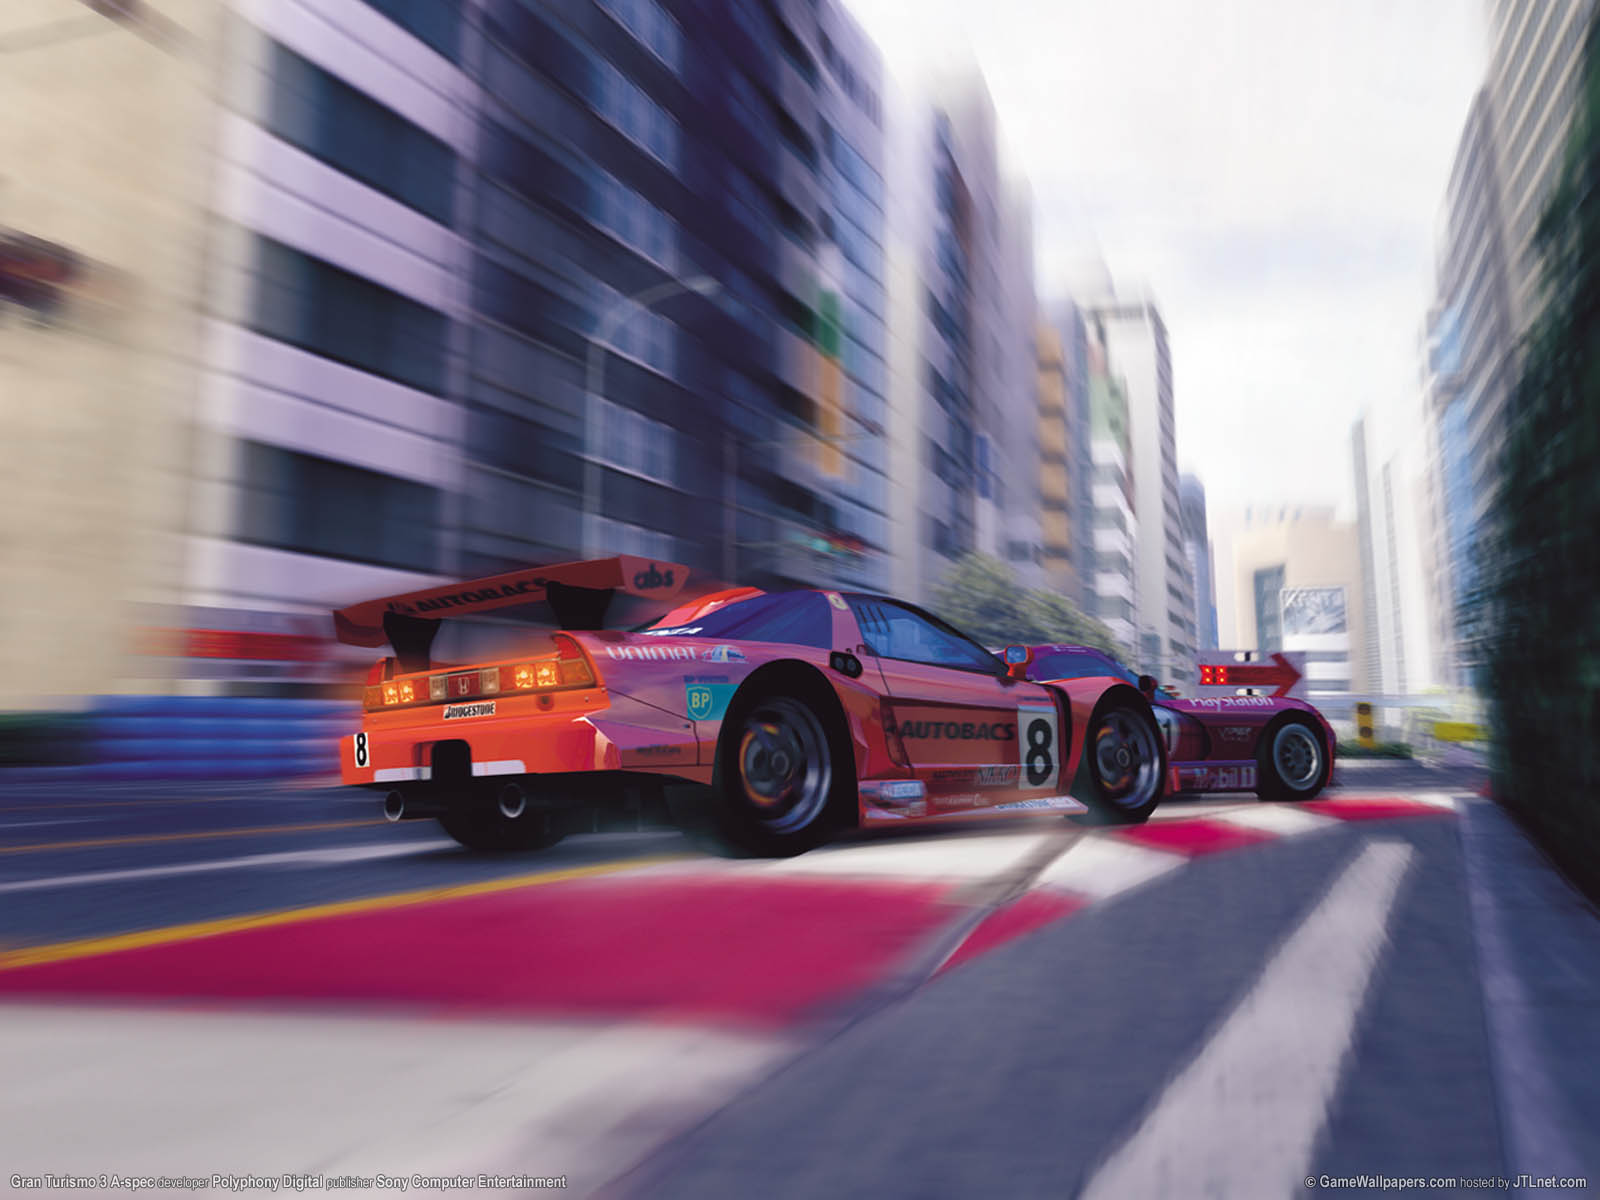 Gran Turismo 3 A-spec fond d'cran 11 1600x1200